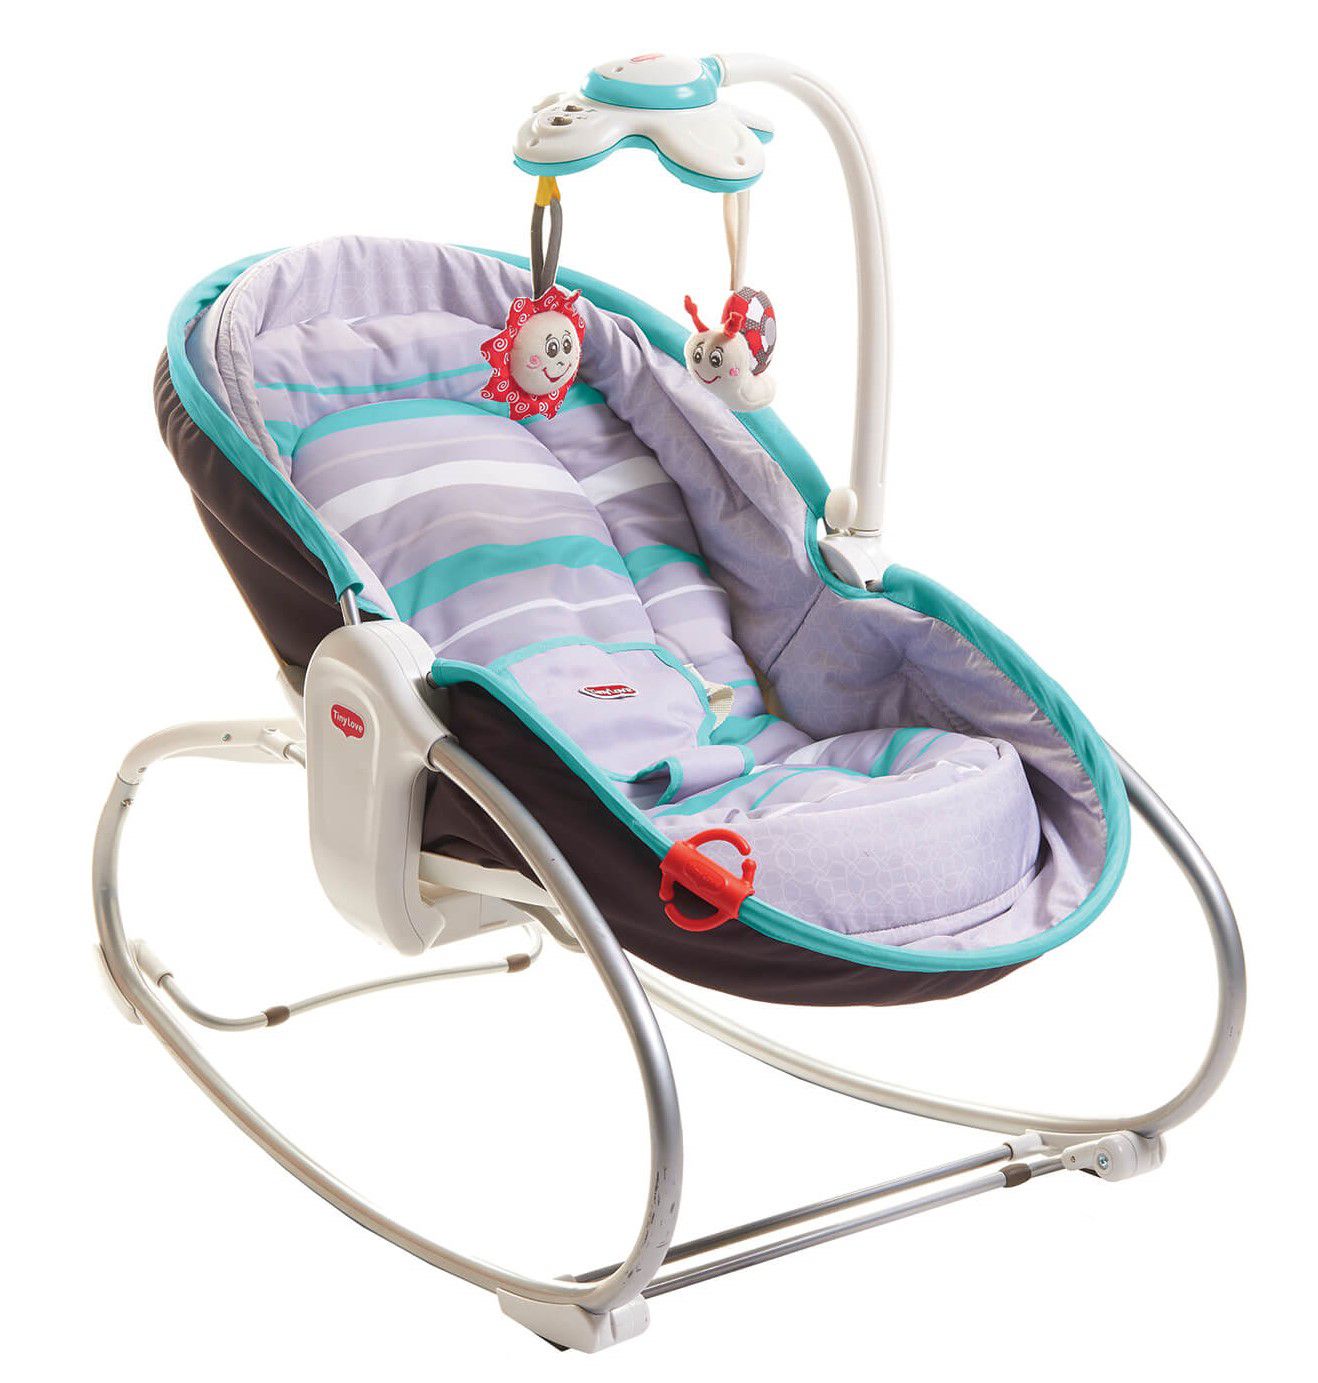 Cadeira de Balanço Tiny Love 3 em 1 Rocker Napper Cinza e Turqueza - Tutti  Amore - A melhor loja para o seu bebê